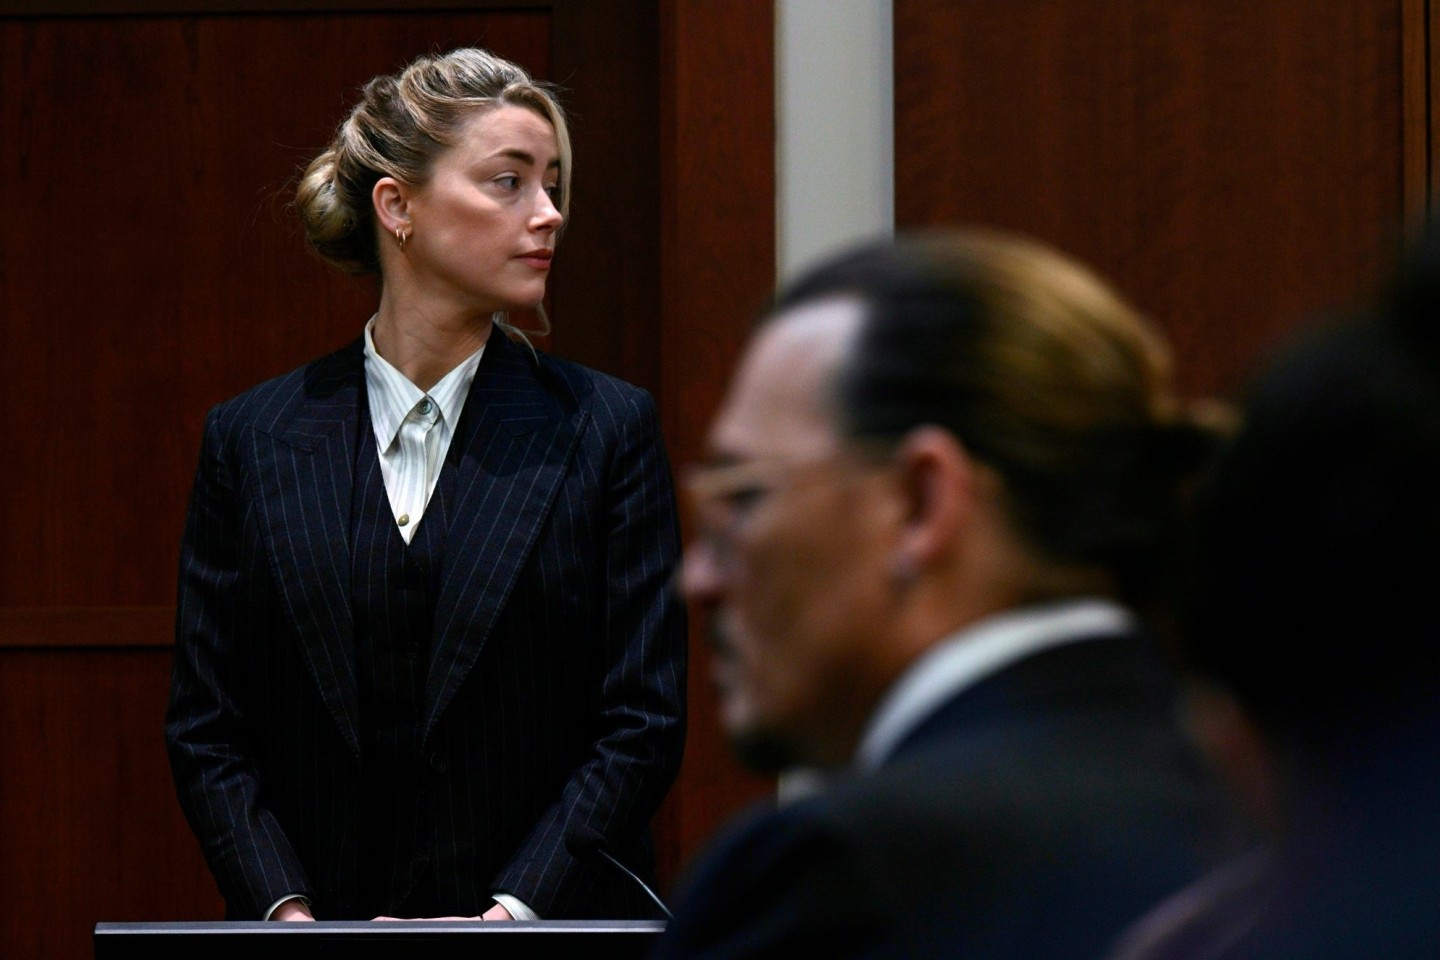 Liefern sich einen Rechtsstreit vor Gericht: Die Ex-Ehepartner Amber Heard und Johnny Depp.